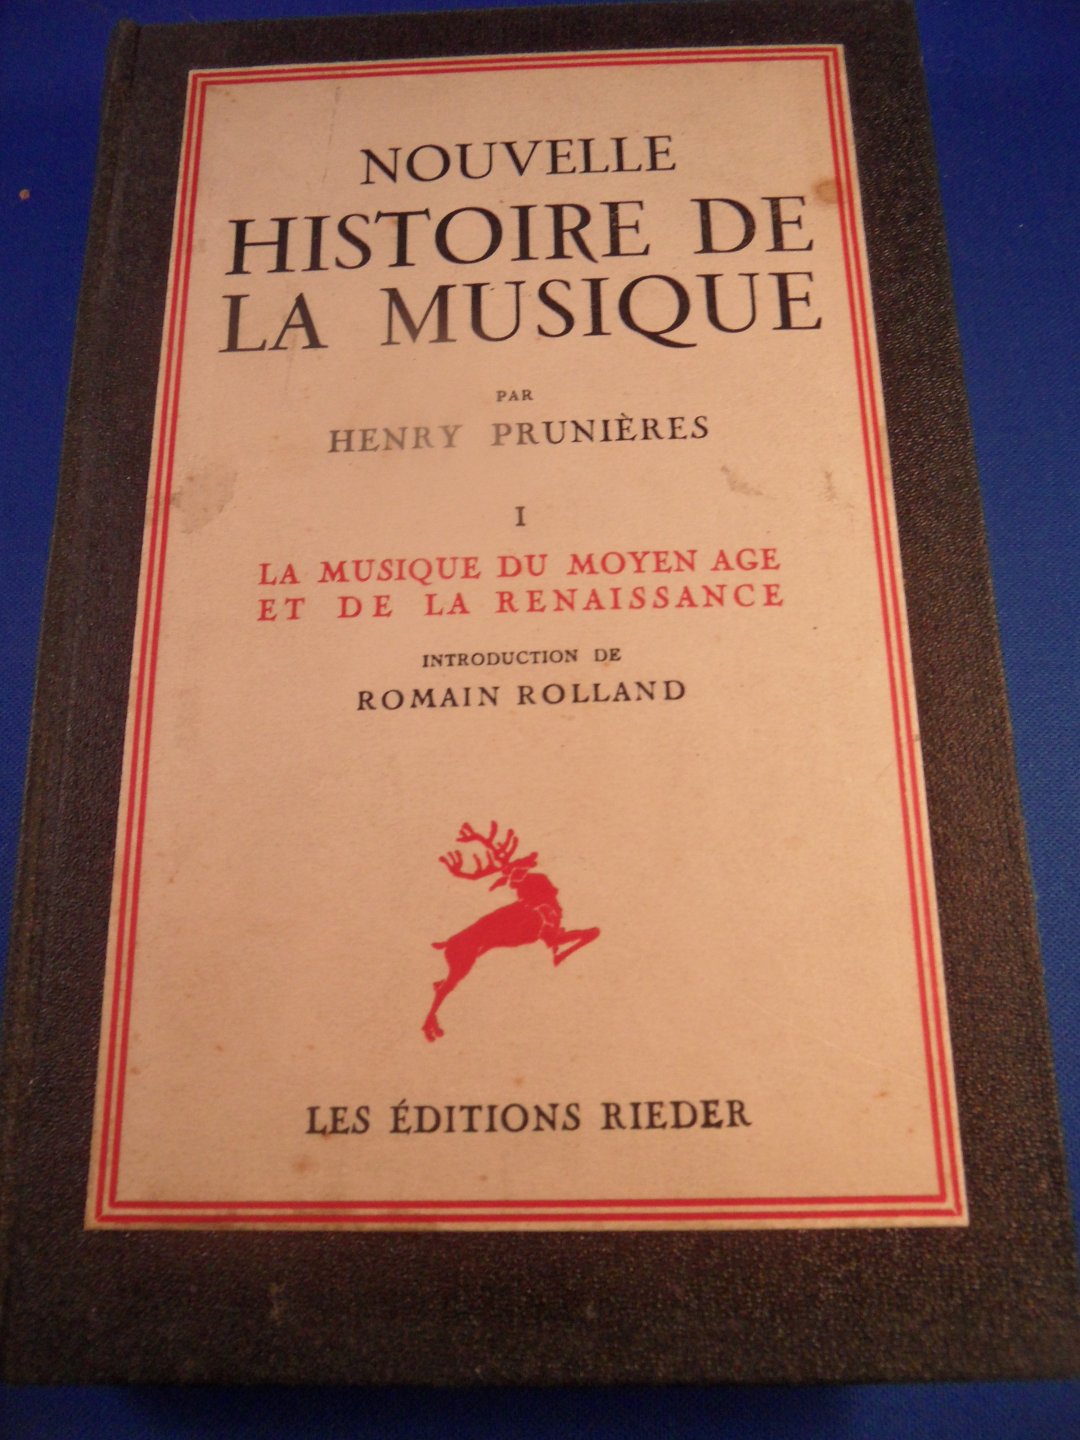 Prunieres, Henry - Nouvelle histoire de la musique. La musique du moyen age et de la Renaissance. Introduction de Romain Rolland